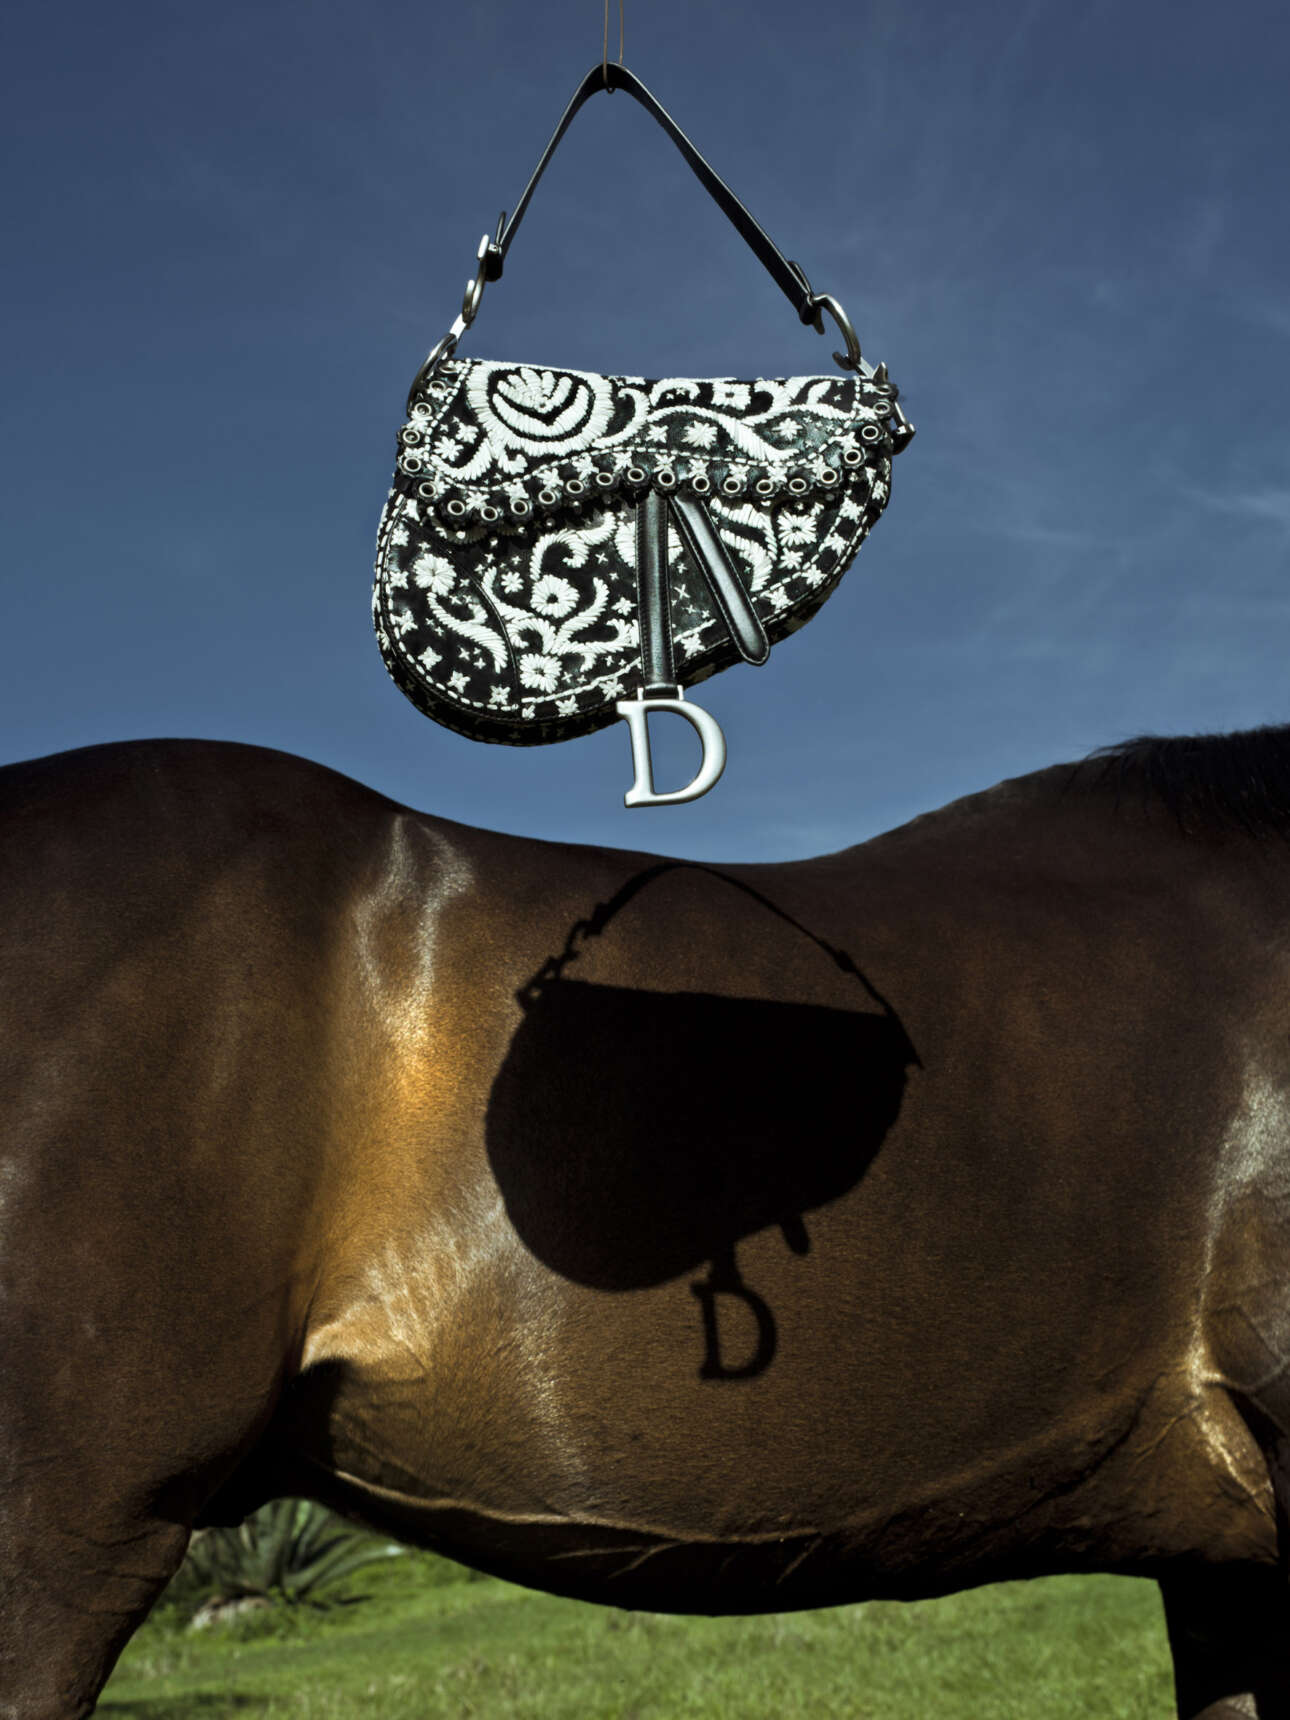 Στη φωτογράφιση για τη συλλογή Dior Cruise 2019 της Μαρία Γκράτσια Κιούρι στο Μεξικό, η Κριστίνα τε Μιντέλ έδωσε έμφαση στα άλογα. Στην παραπάνω εικόνα, αυτό που την τράβηξε ήταν η γλυπτική σωματικότητα των ζώων που καβαλούσαν οι «εσκαραμούζα» -ομάδες οκτώ γυναικών που ιππεύουν μαζί εκτελώντας εντυπωσιακές χορογραφίες πάνω στα άλογα - των οποίων το στυλ και η ατρόμητη στάση ήταν βασικές πηγές έμπνευσης για τη συλλογή